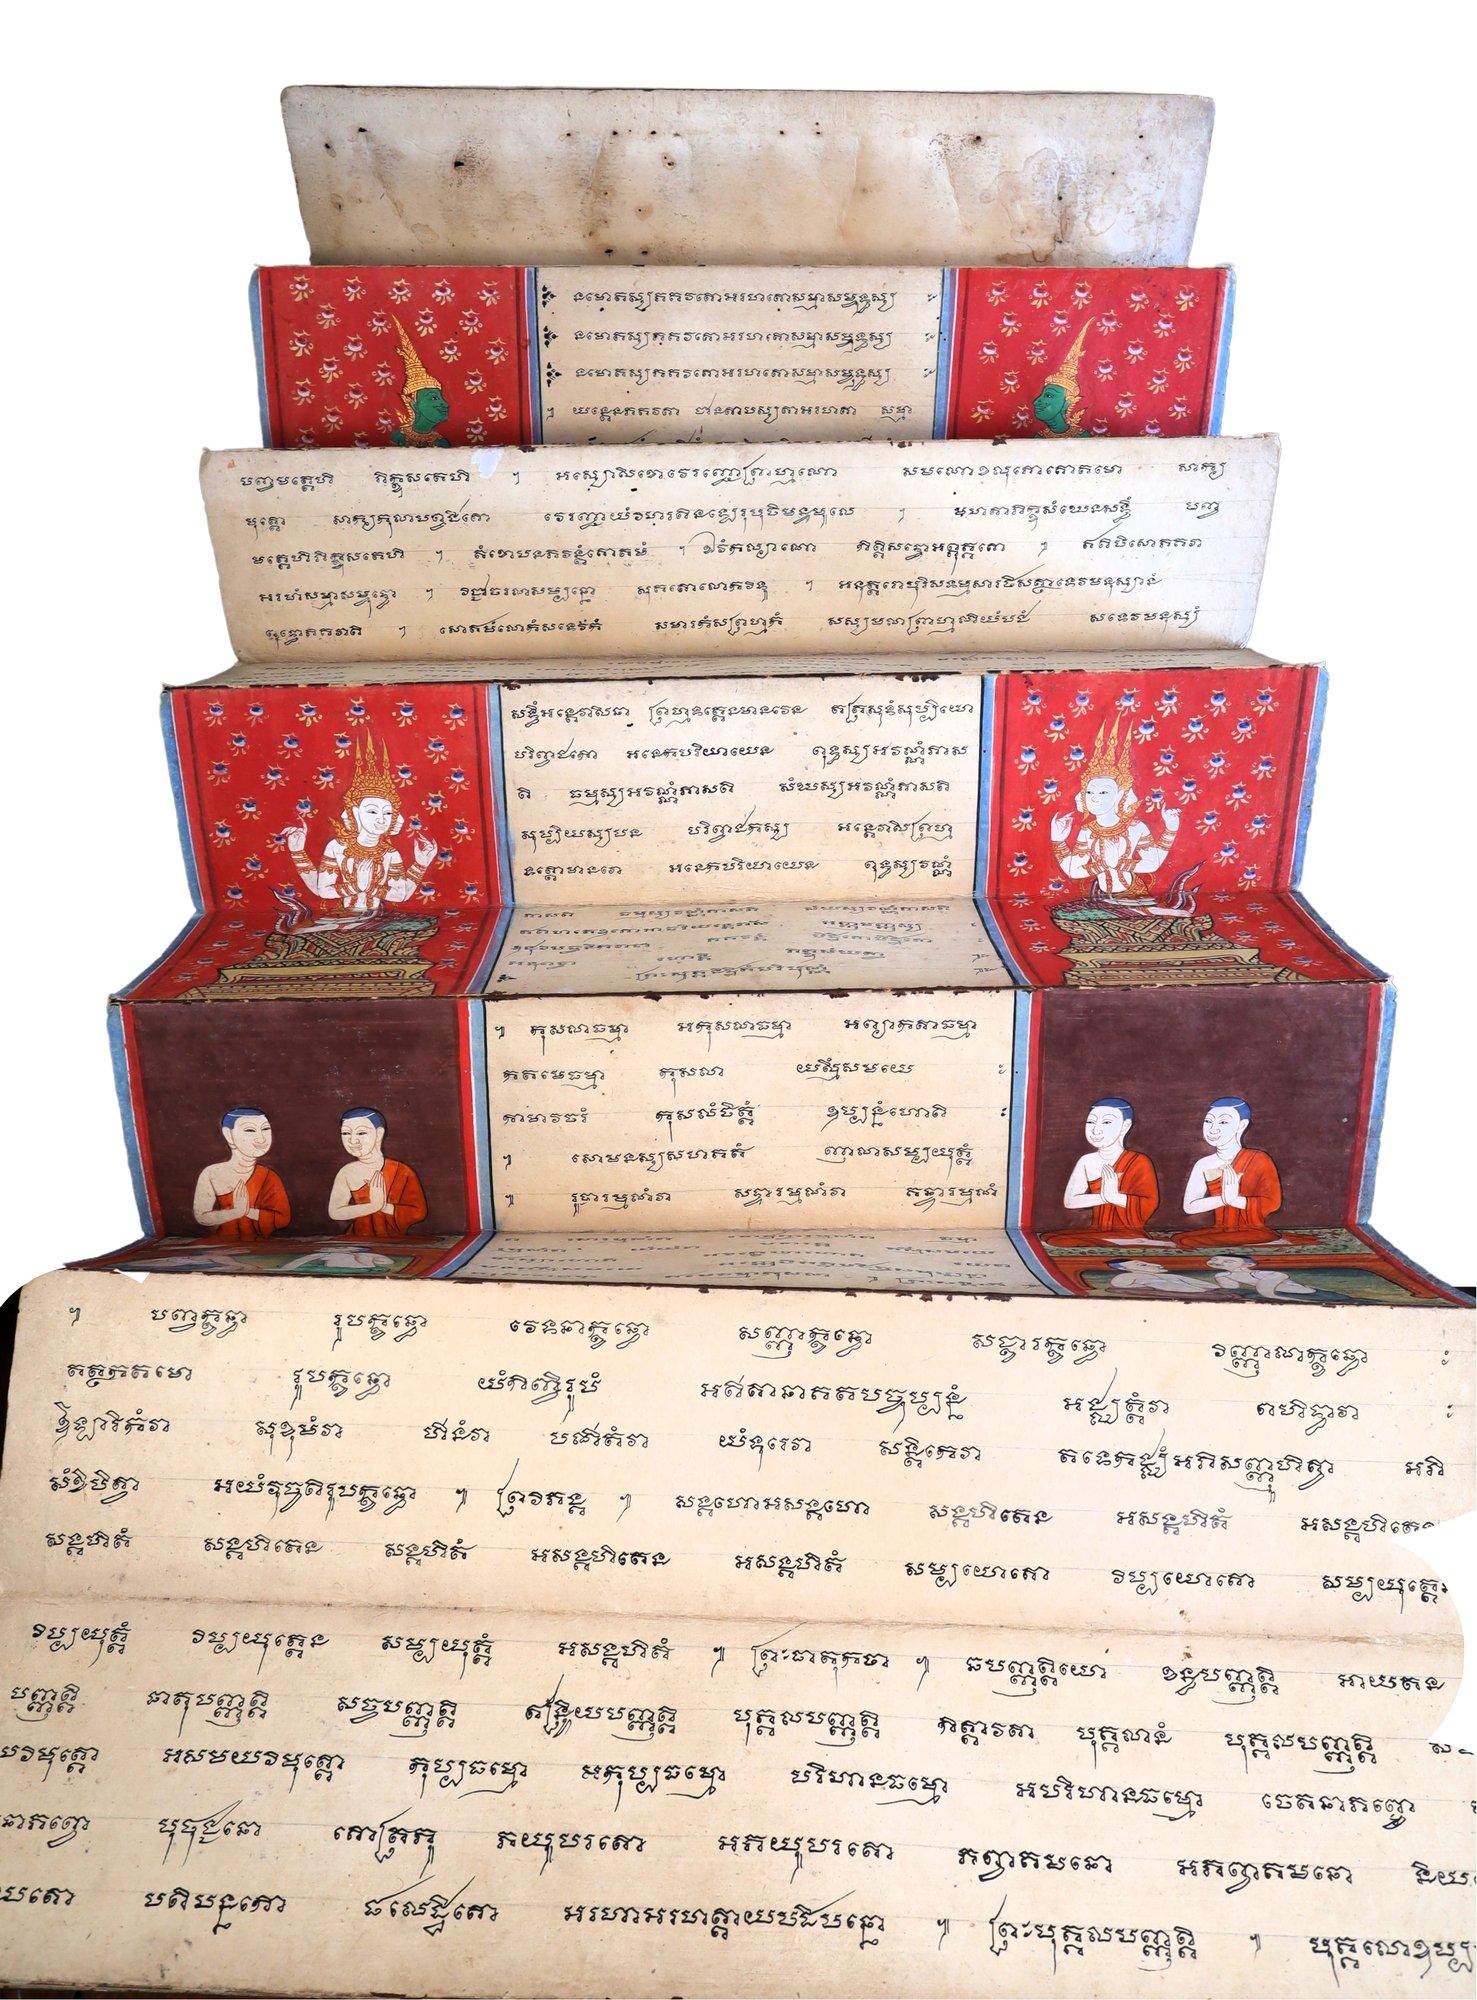 Rare manuscrit bouddhiste illustré Phra Malai de Thaïlande, 19e siècle

Livre pliant en accordéon de style Siam khoi avec couverture en papier laqué, racontant la légende du moine bouddhiste Phra Malai, populaire au Siam -aujourd'hui la Thaïlande-. 